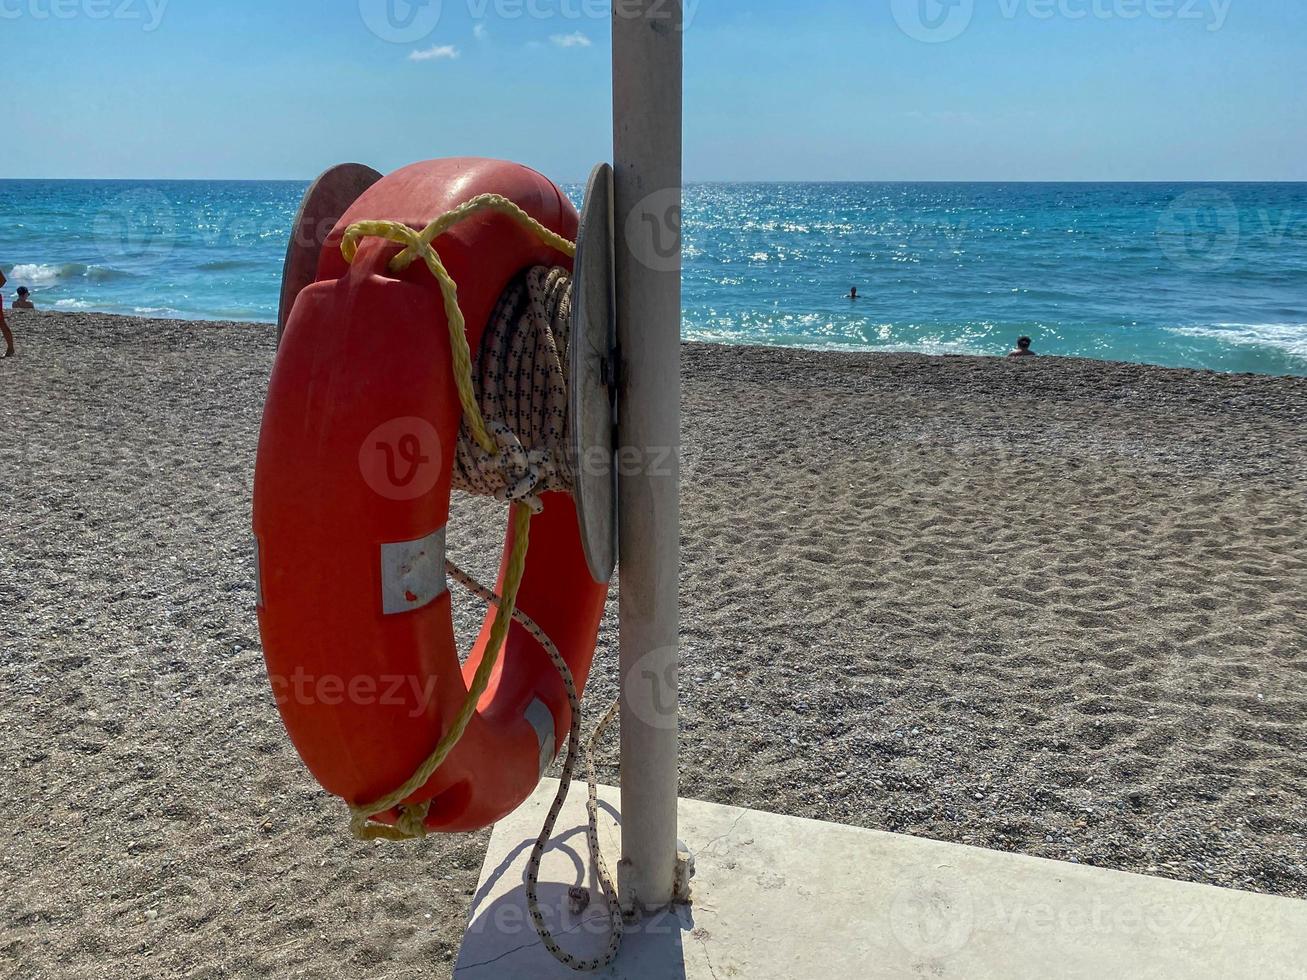 bouée de sauvetage rouge ronde non coulante pour la sécurité afin de sauver la vie des personnes qui se noient touristes sur la plage dans un pays tropical chaud de l'est sud paradisiaque photo